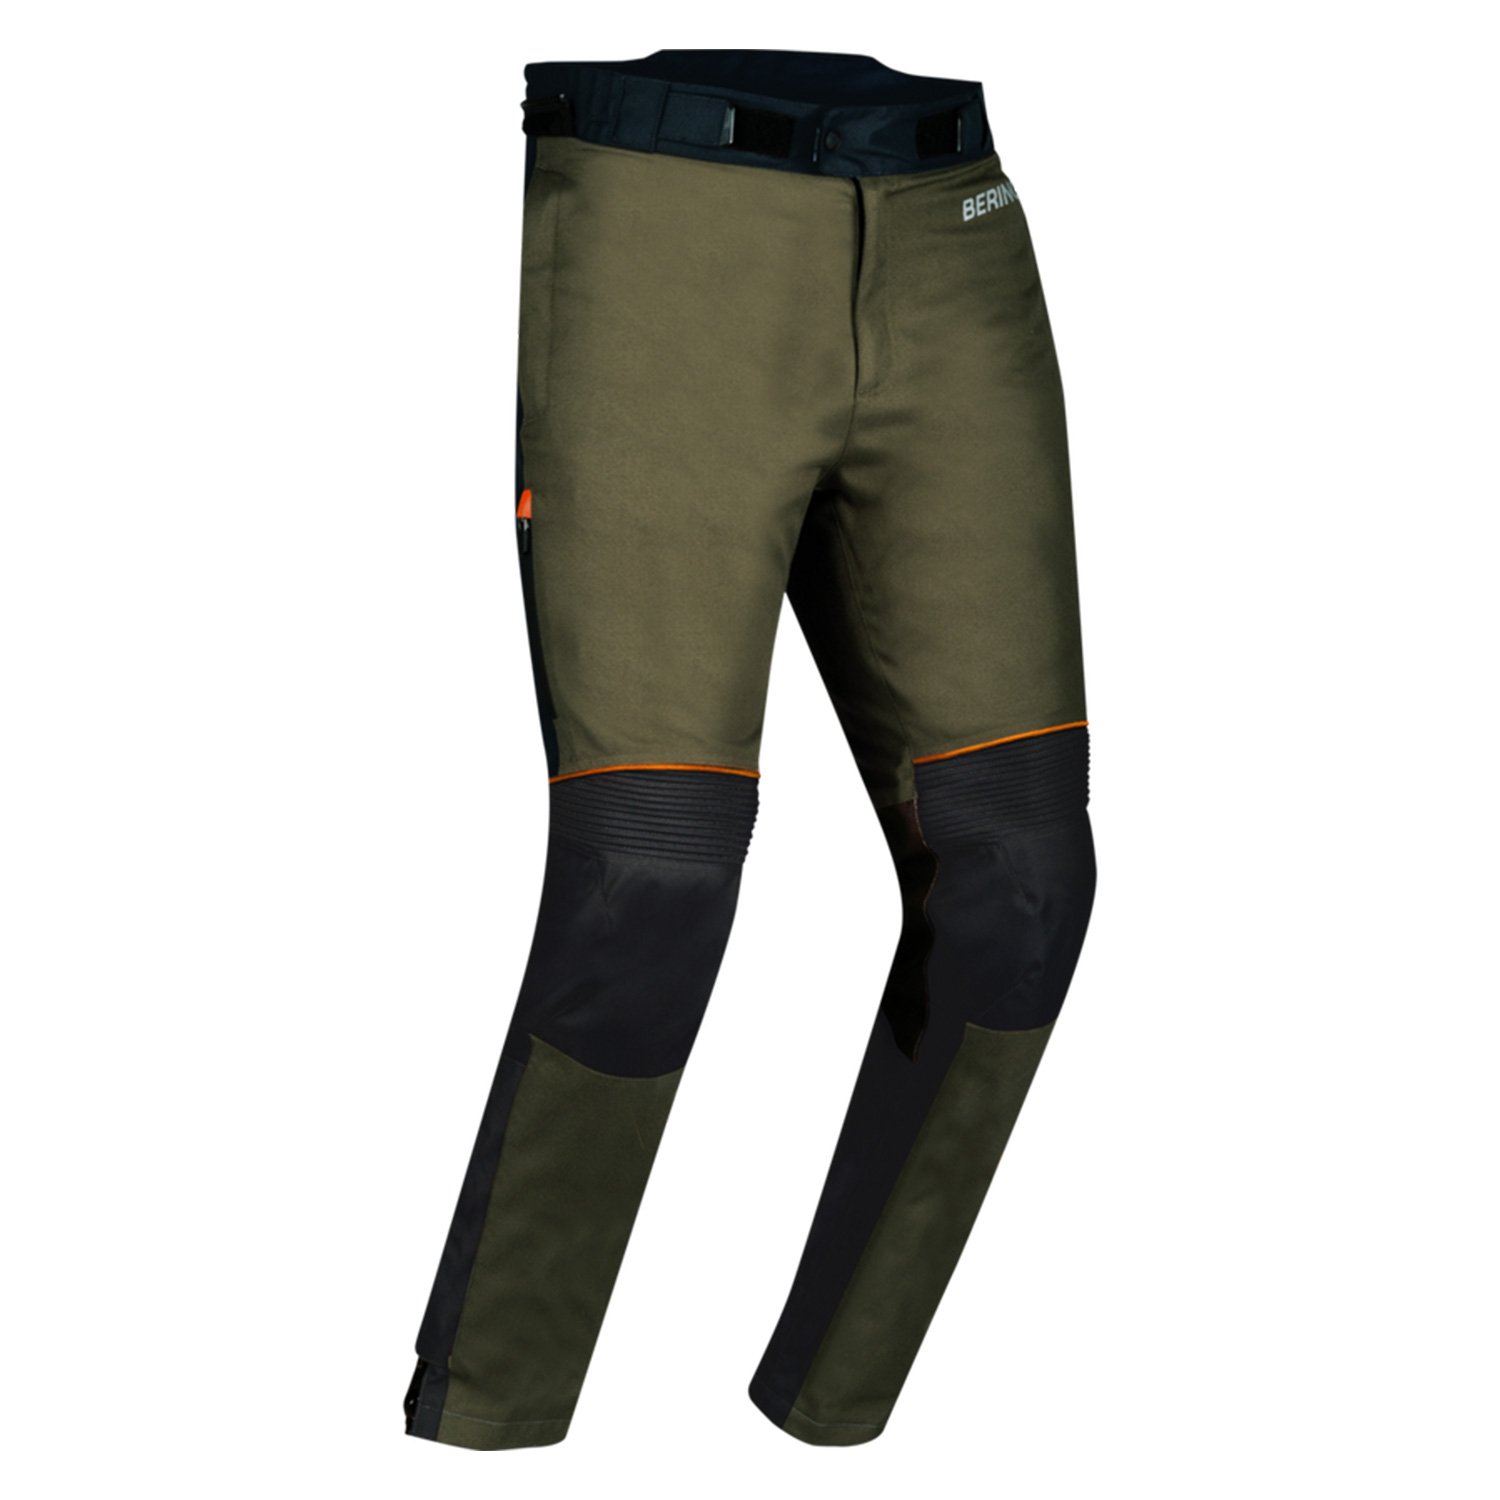 Image of Bering Zephyr Trousers Black Khaki Orange Size 2XL ID 3660815180839